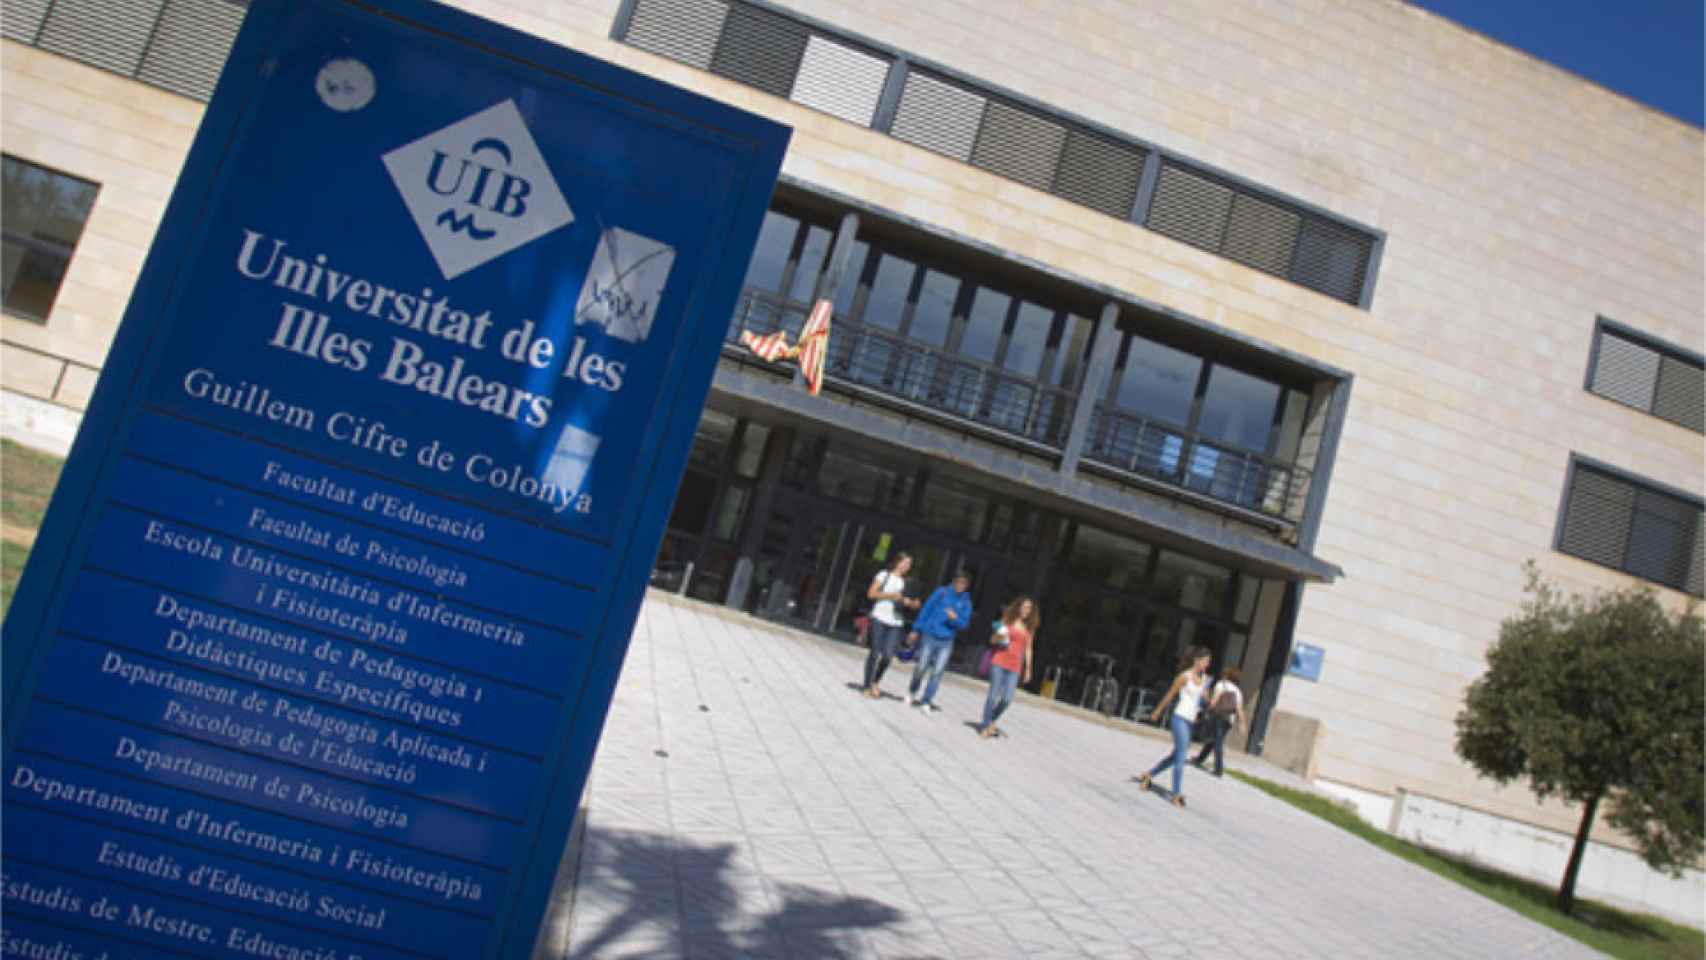 Entrada a uno de los edificios de la Universidad de Baleares